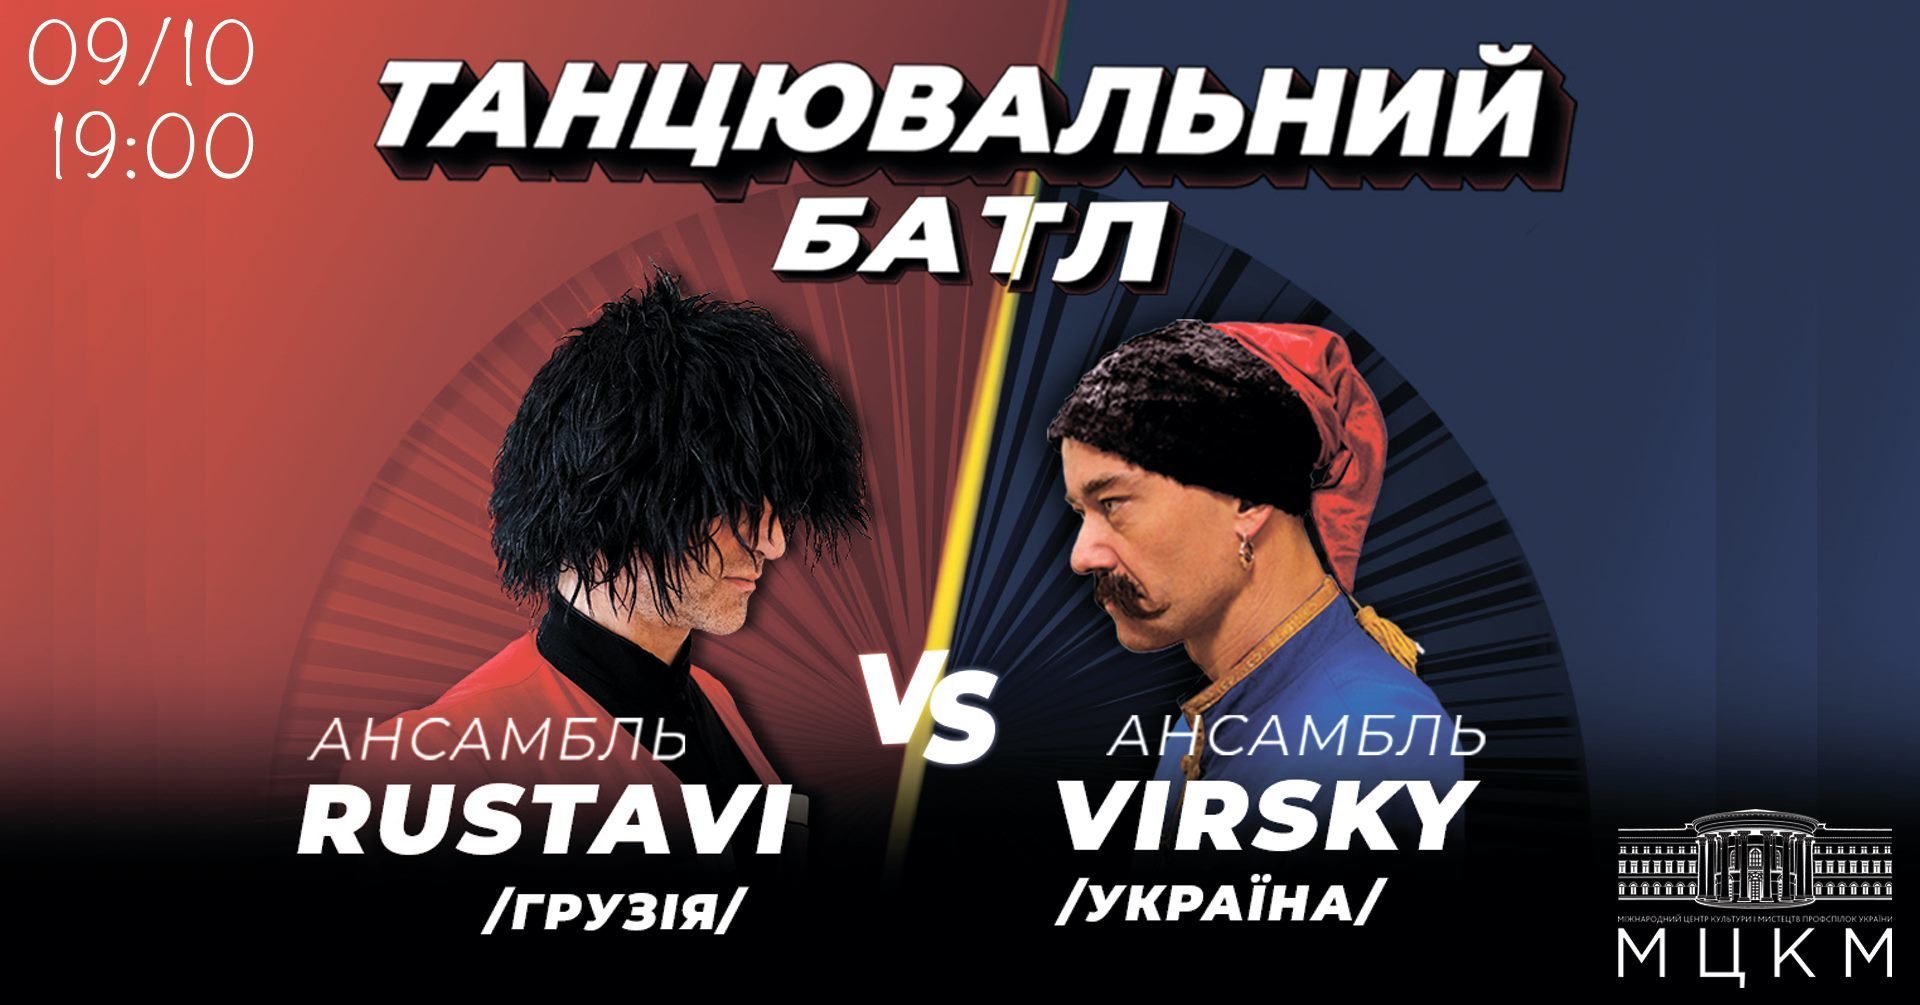 Танцевальный батл: Вирский vs Rustavi